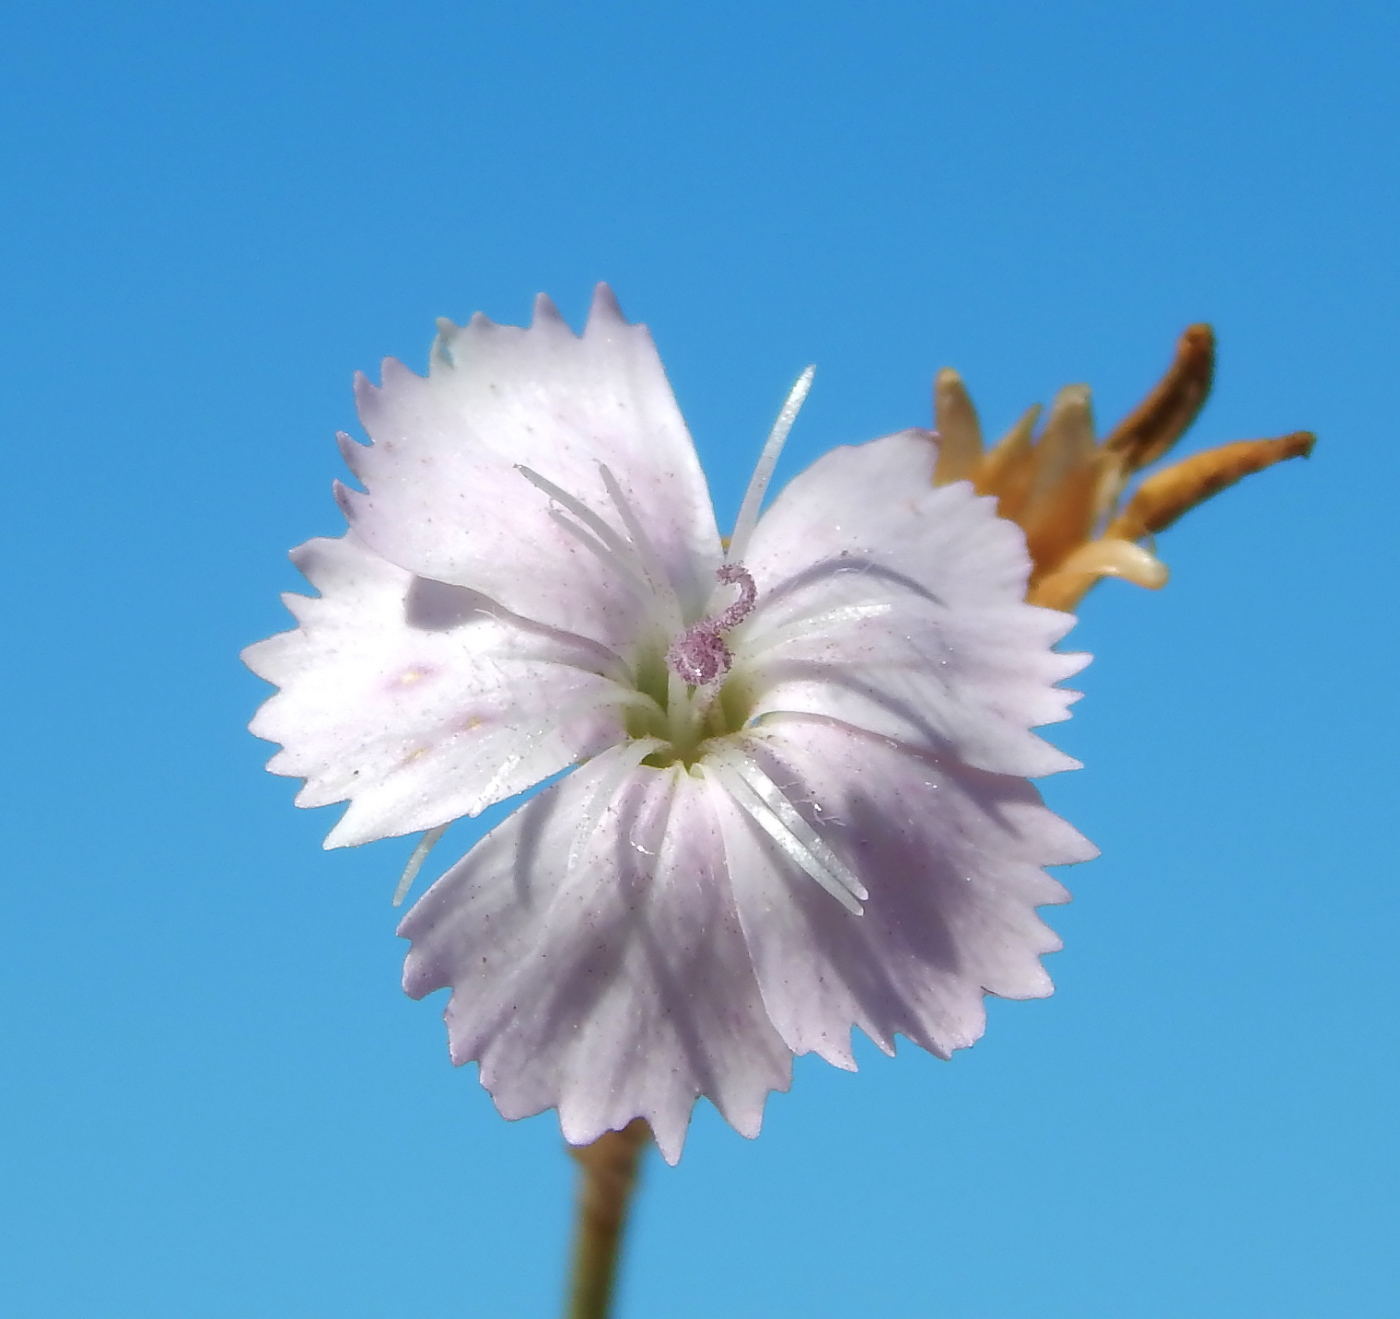 Image of genus Dianthus specimen.